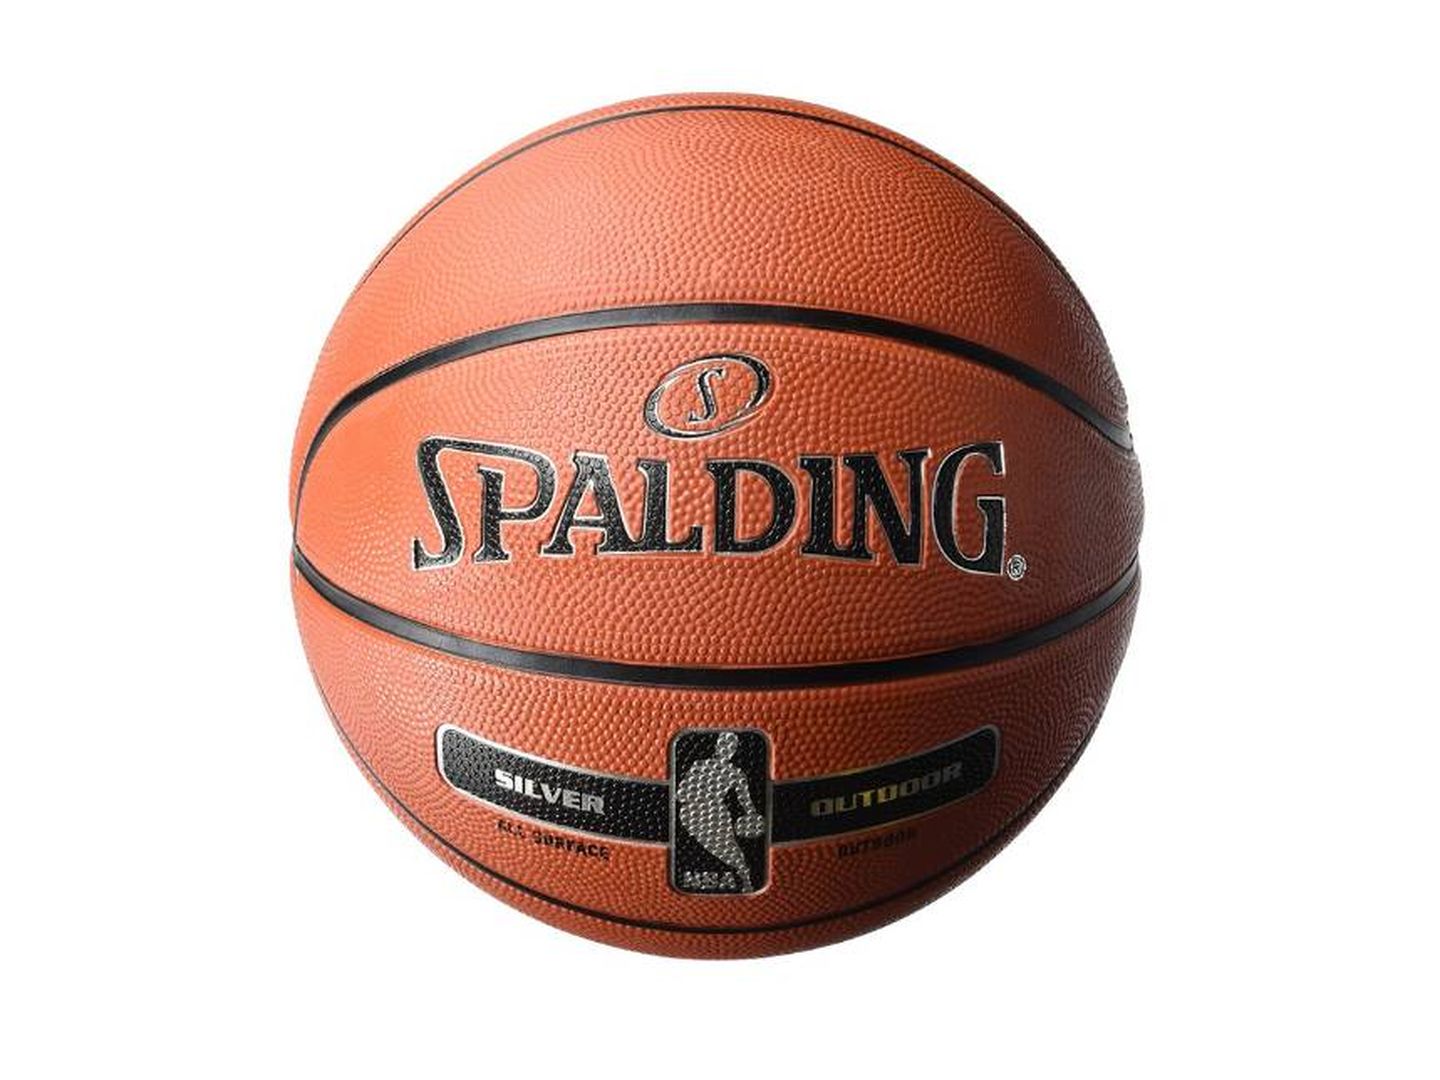 Encuentra tu Balón de Talla 6 para jugar al Baloncesto como nunca